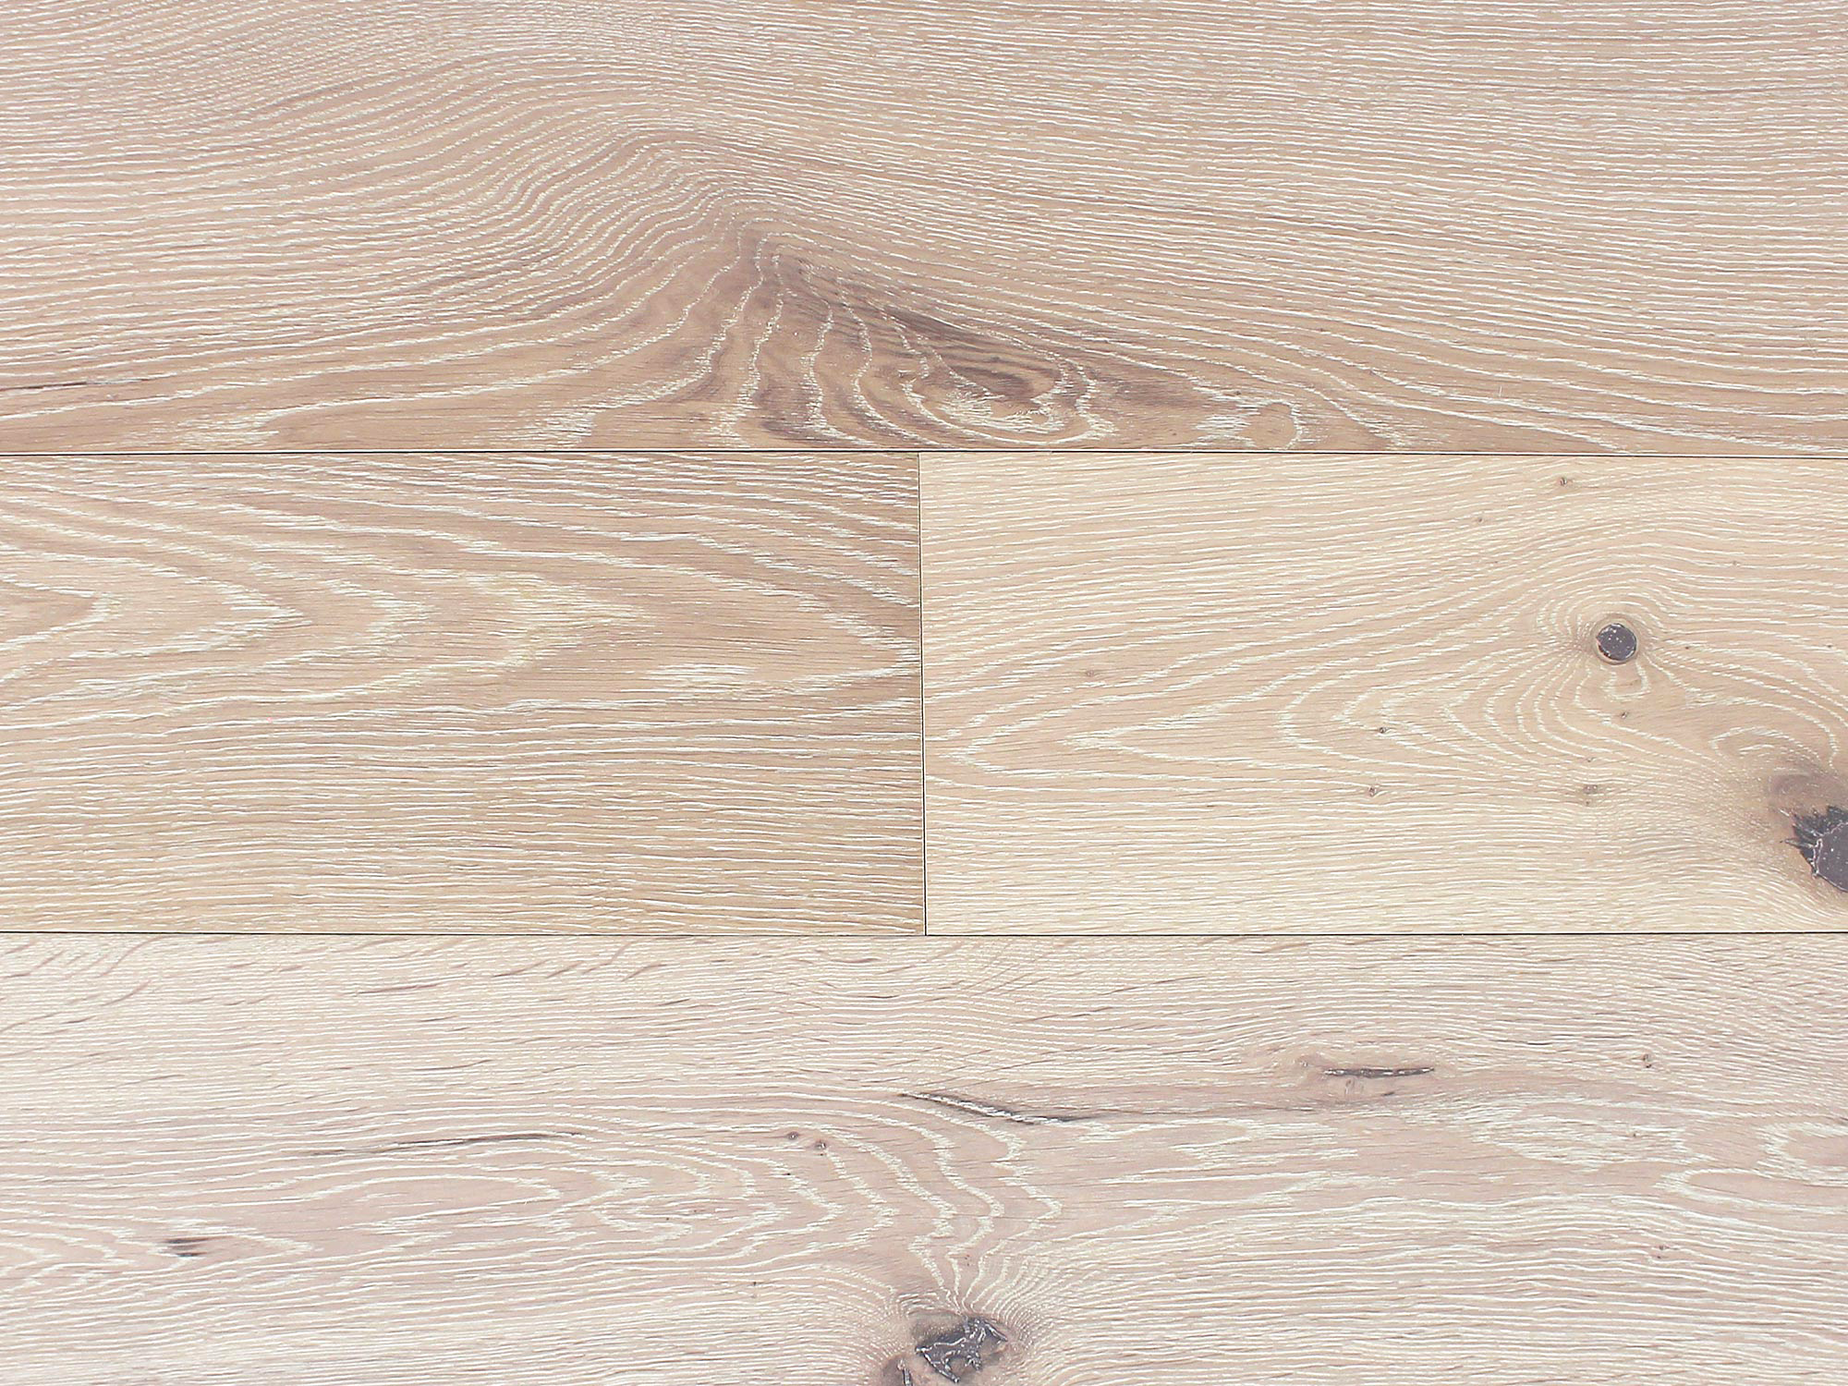 CHATEAU BLANC | Engineered Hardwood by Pravada Floors